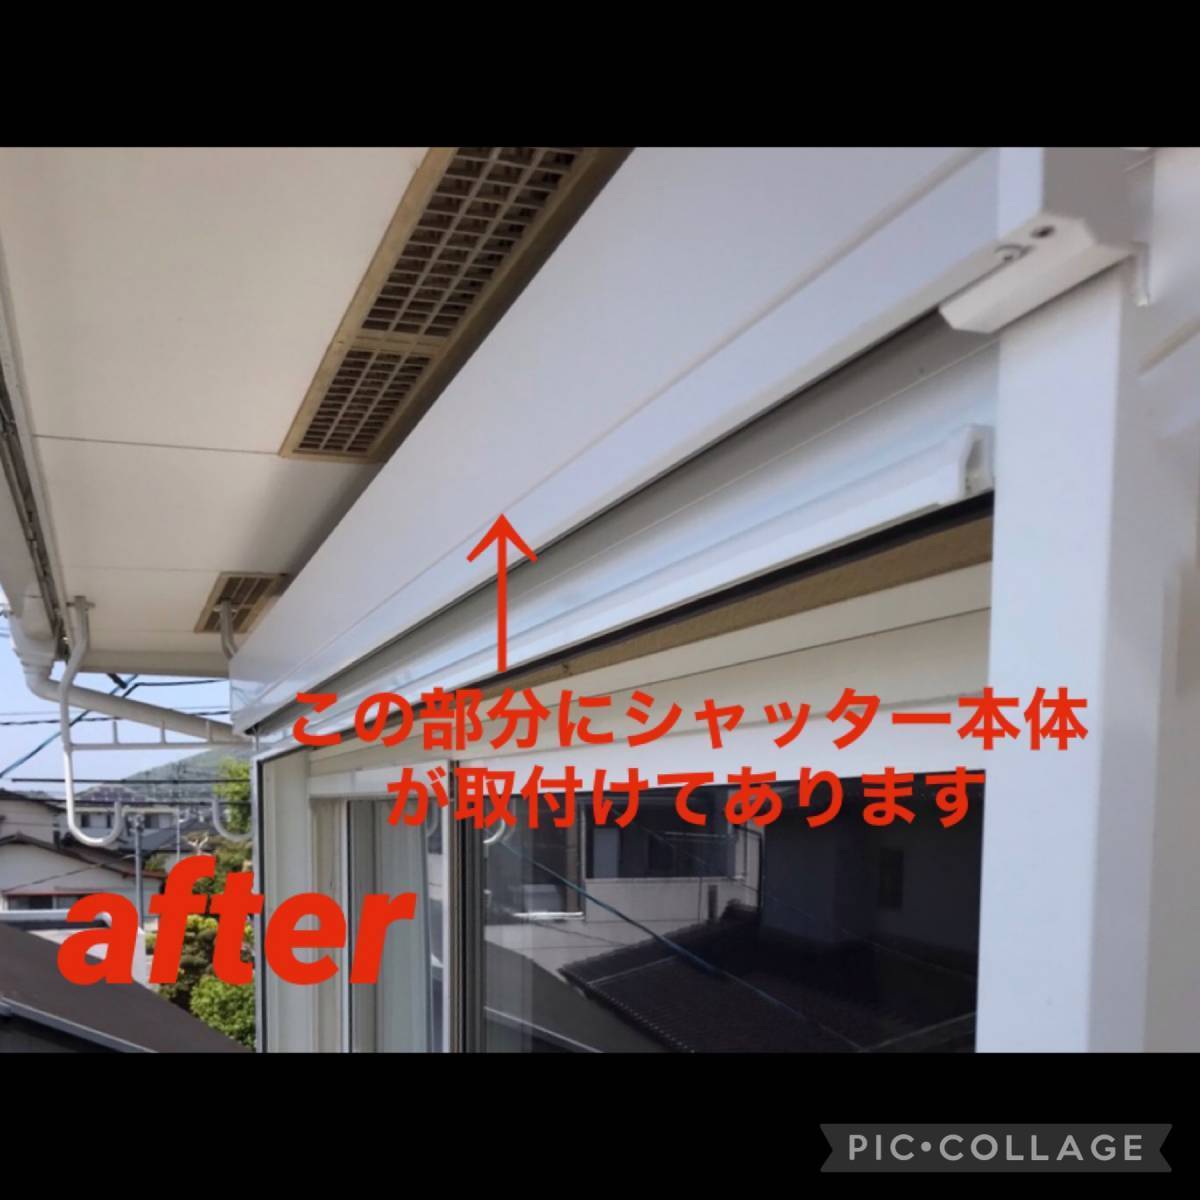 原口建材店 熊本のS様邸リフォームシャッター取付工事の施工後の写真1